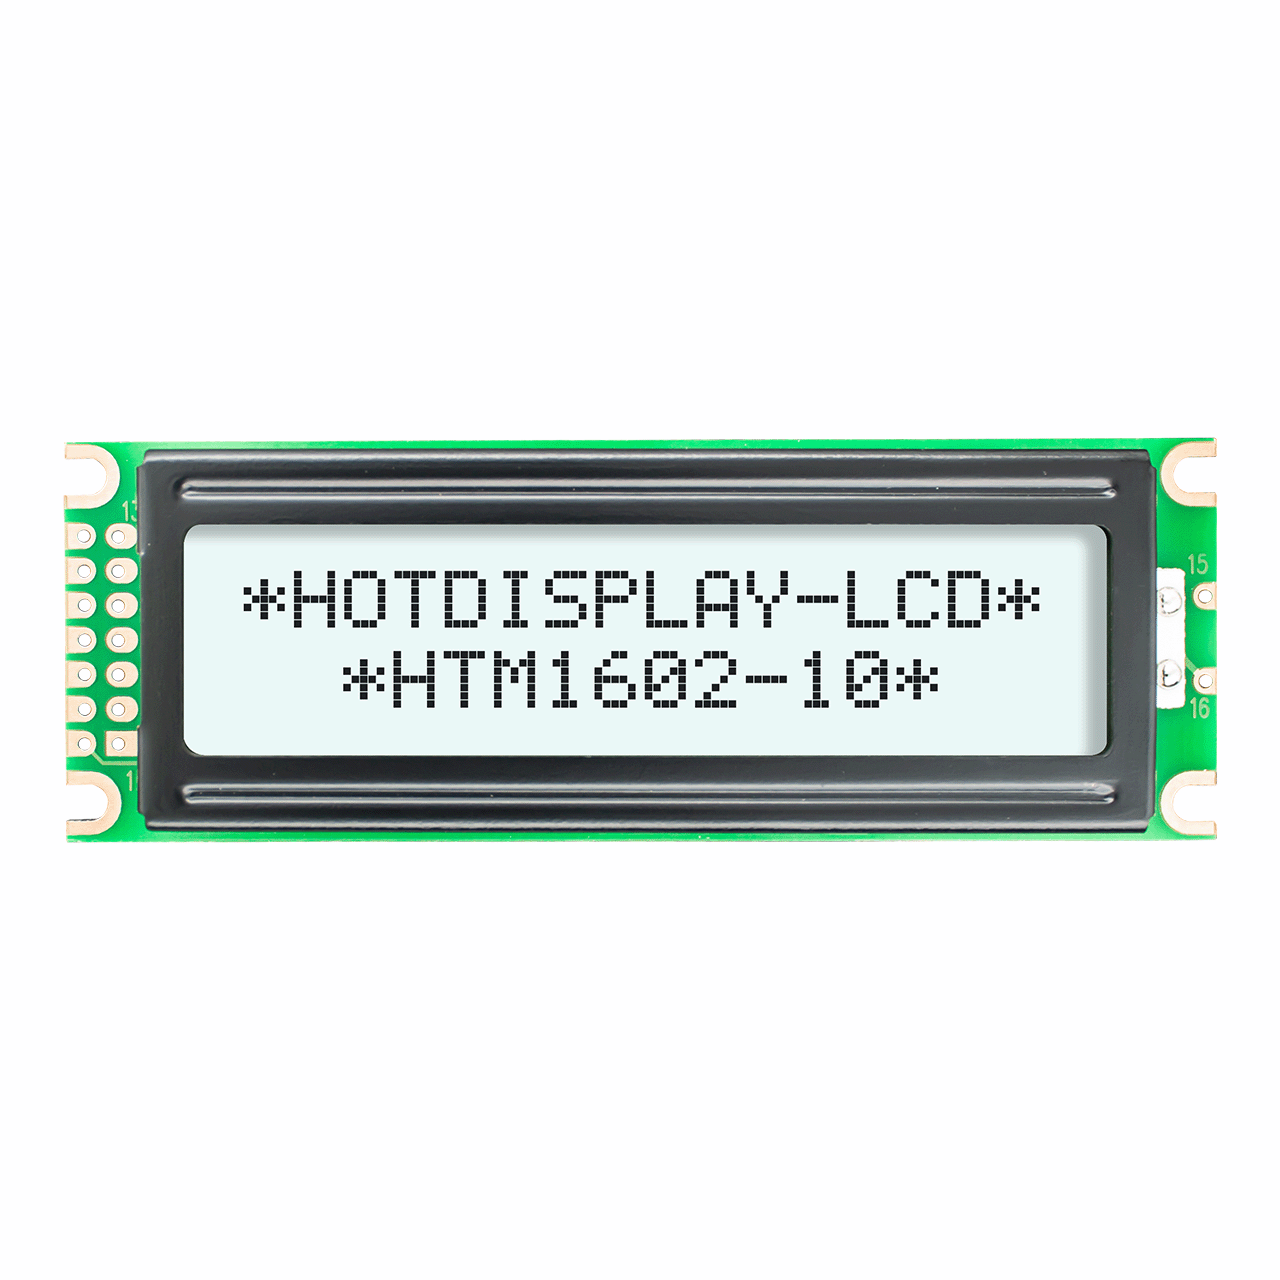 字符 2X16 LCD模组 单色显示器 | FSTN+ 侧面白色背光 5.0V-Arduino